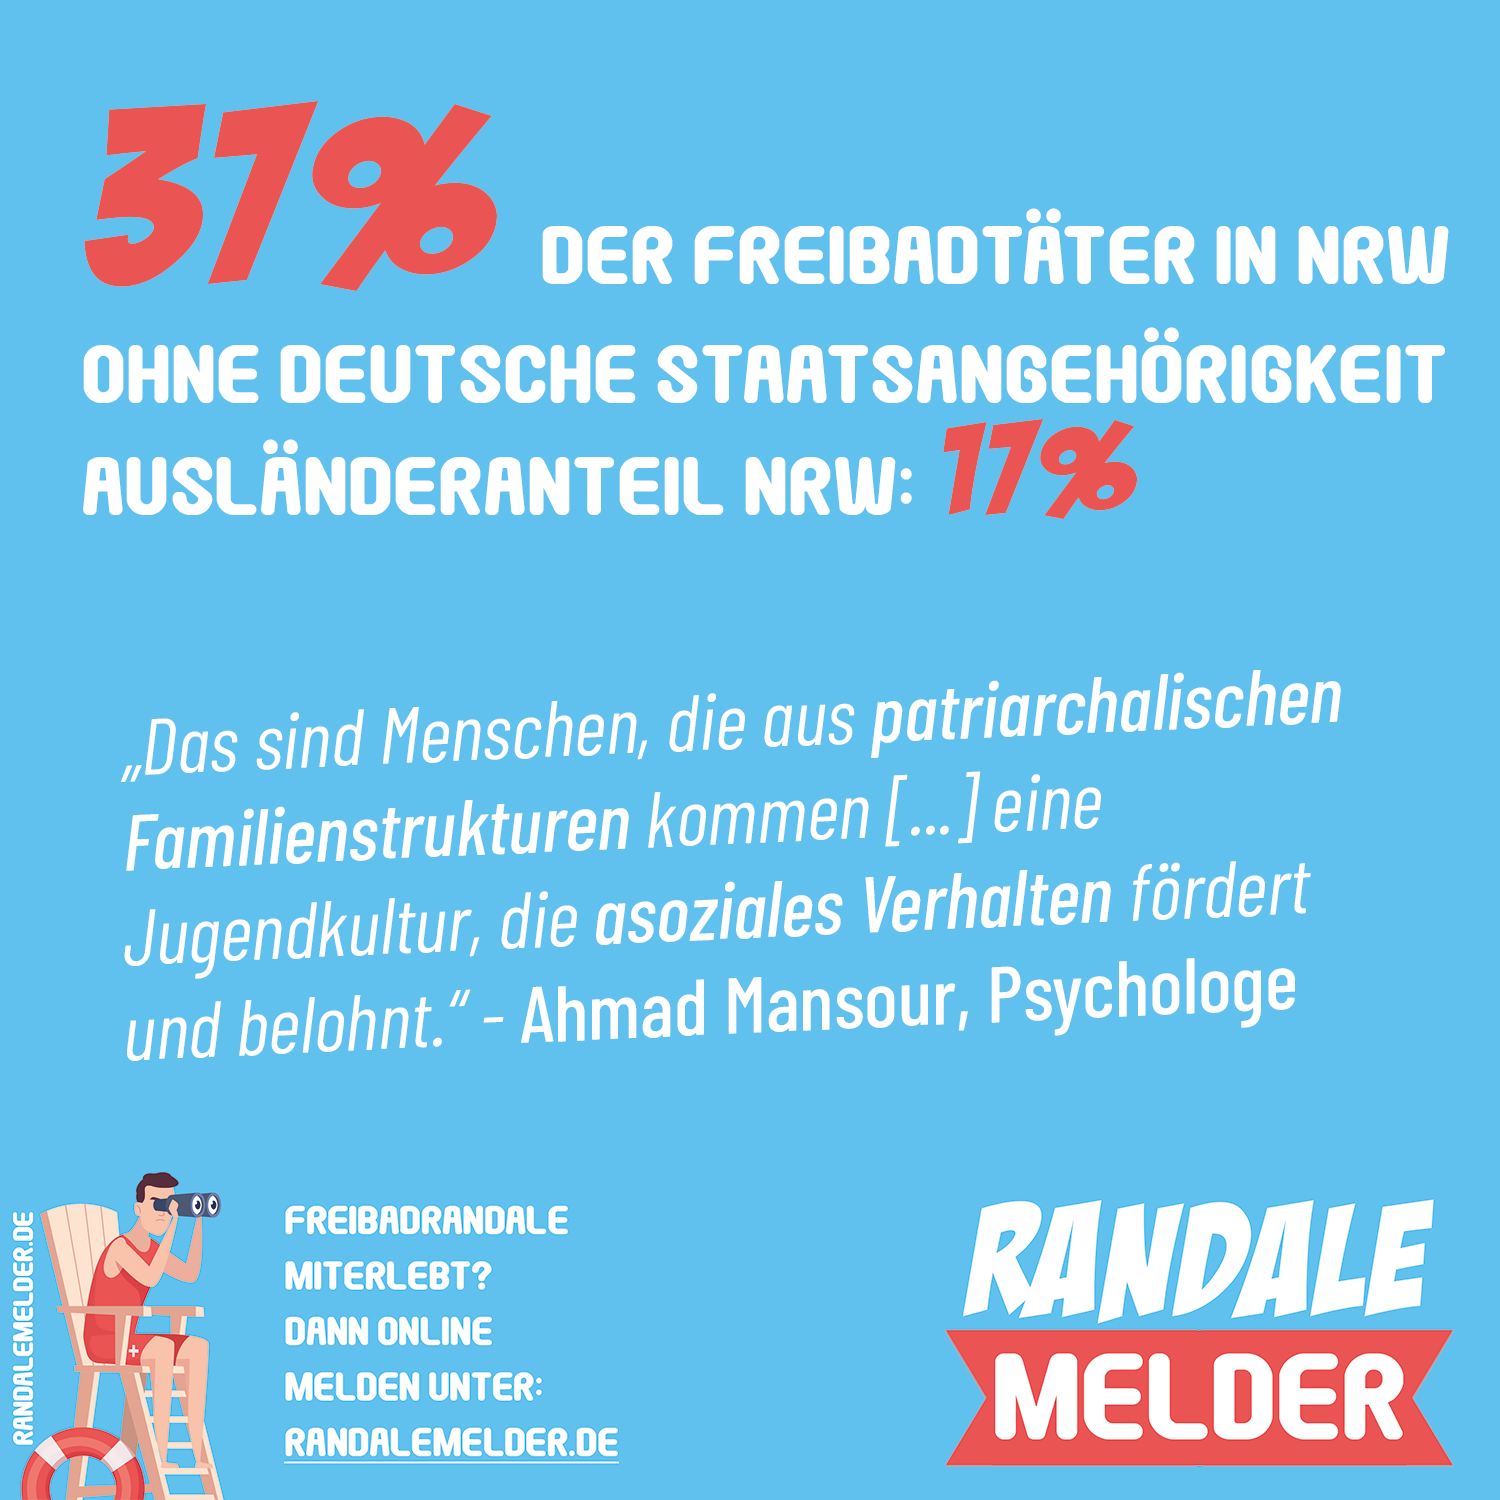 You are currently viewing 37% der Freibadtäter in NRW ohne deutsche Staatsangehörigkeit